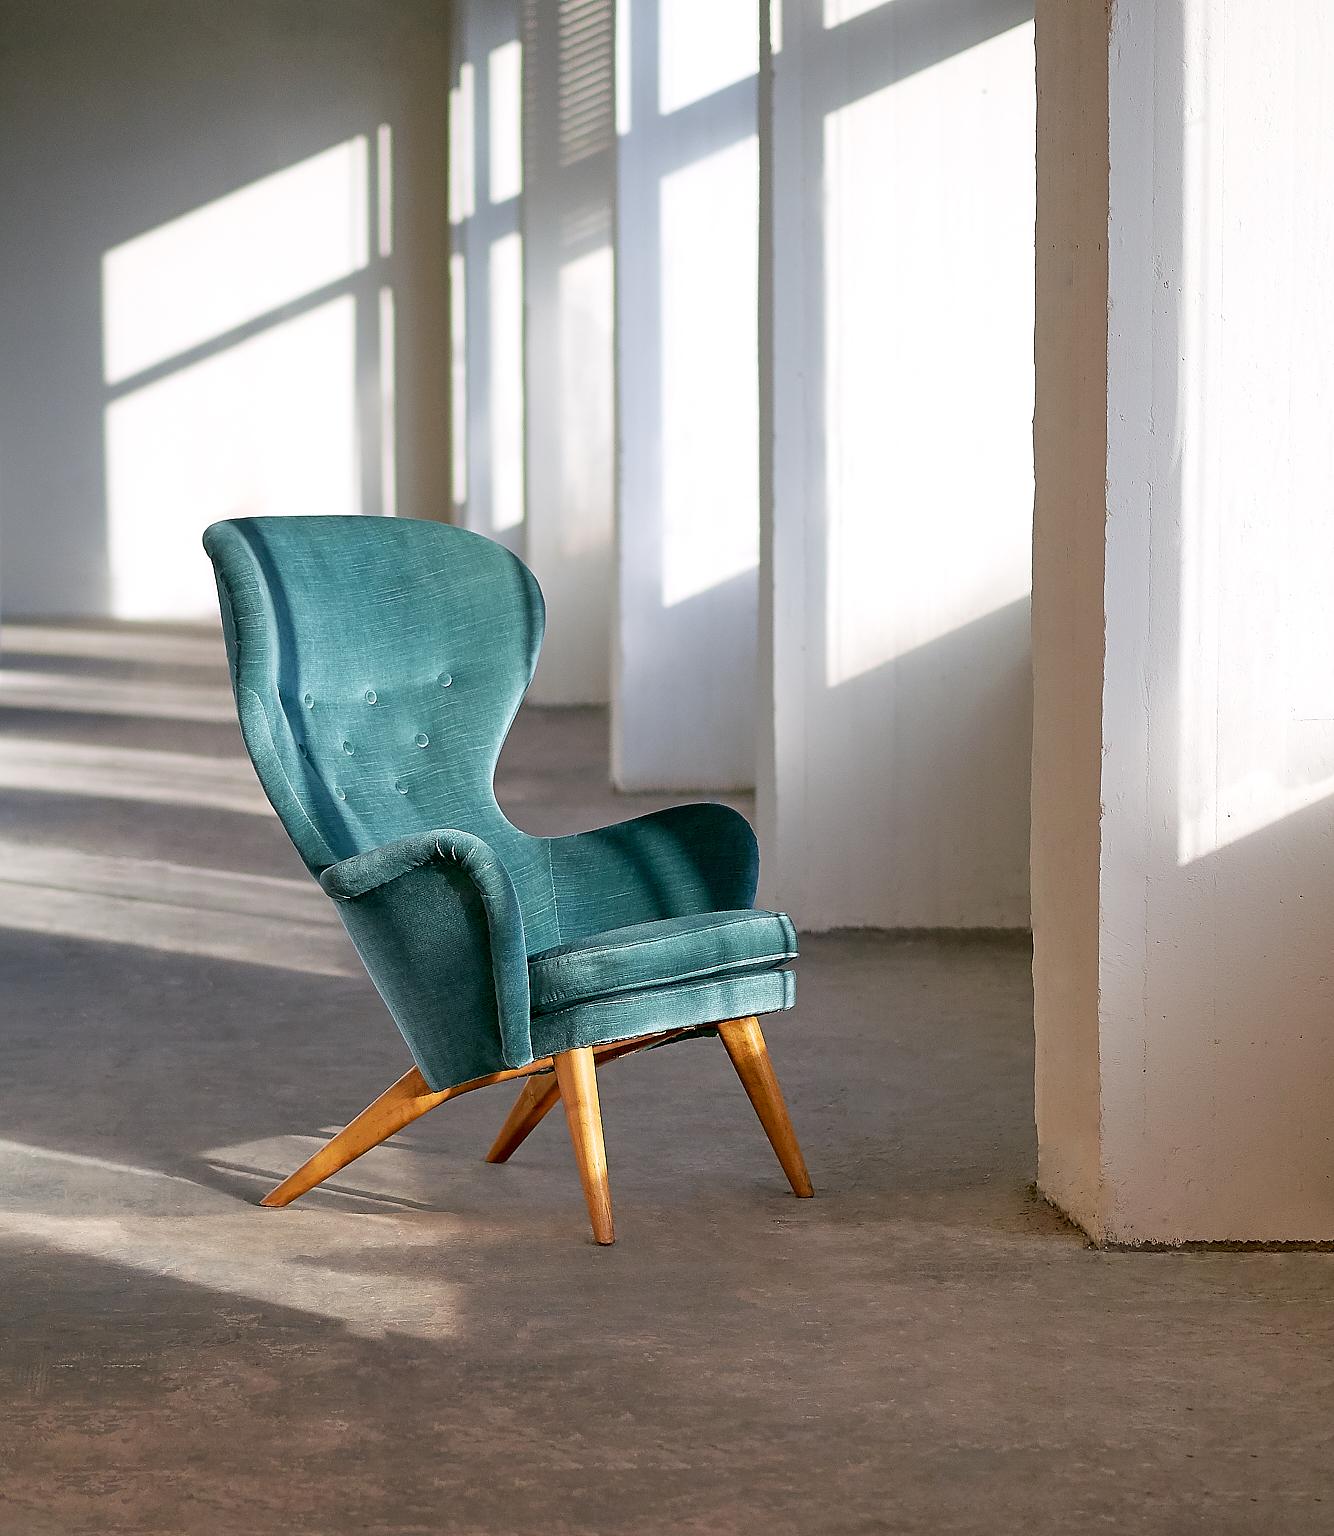 Ce fauteuil rare a été dessiné par Carl-Gustav AFS et produit par sa propre société Hiort Tuote Puunveisto en 1952. Ce modèle a été baptisé Siesta et constitue la création la plus célèbre du designer finlandais. Avec ses pieds incurvés pointant vers